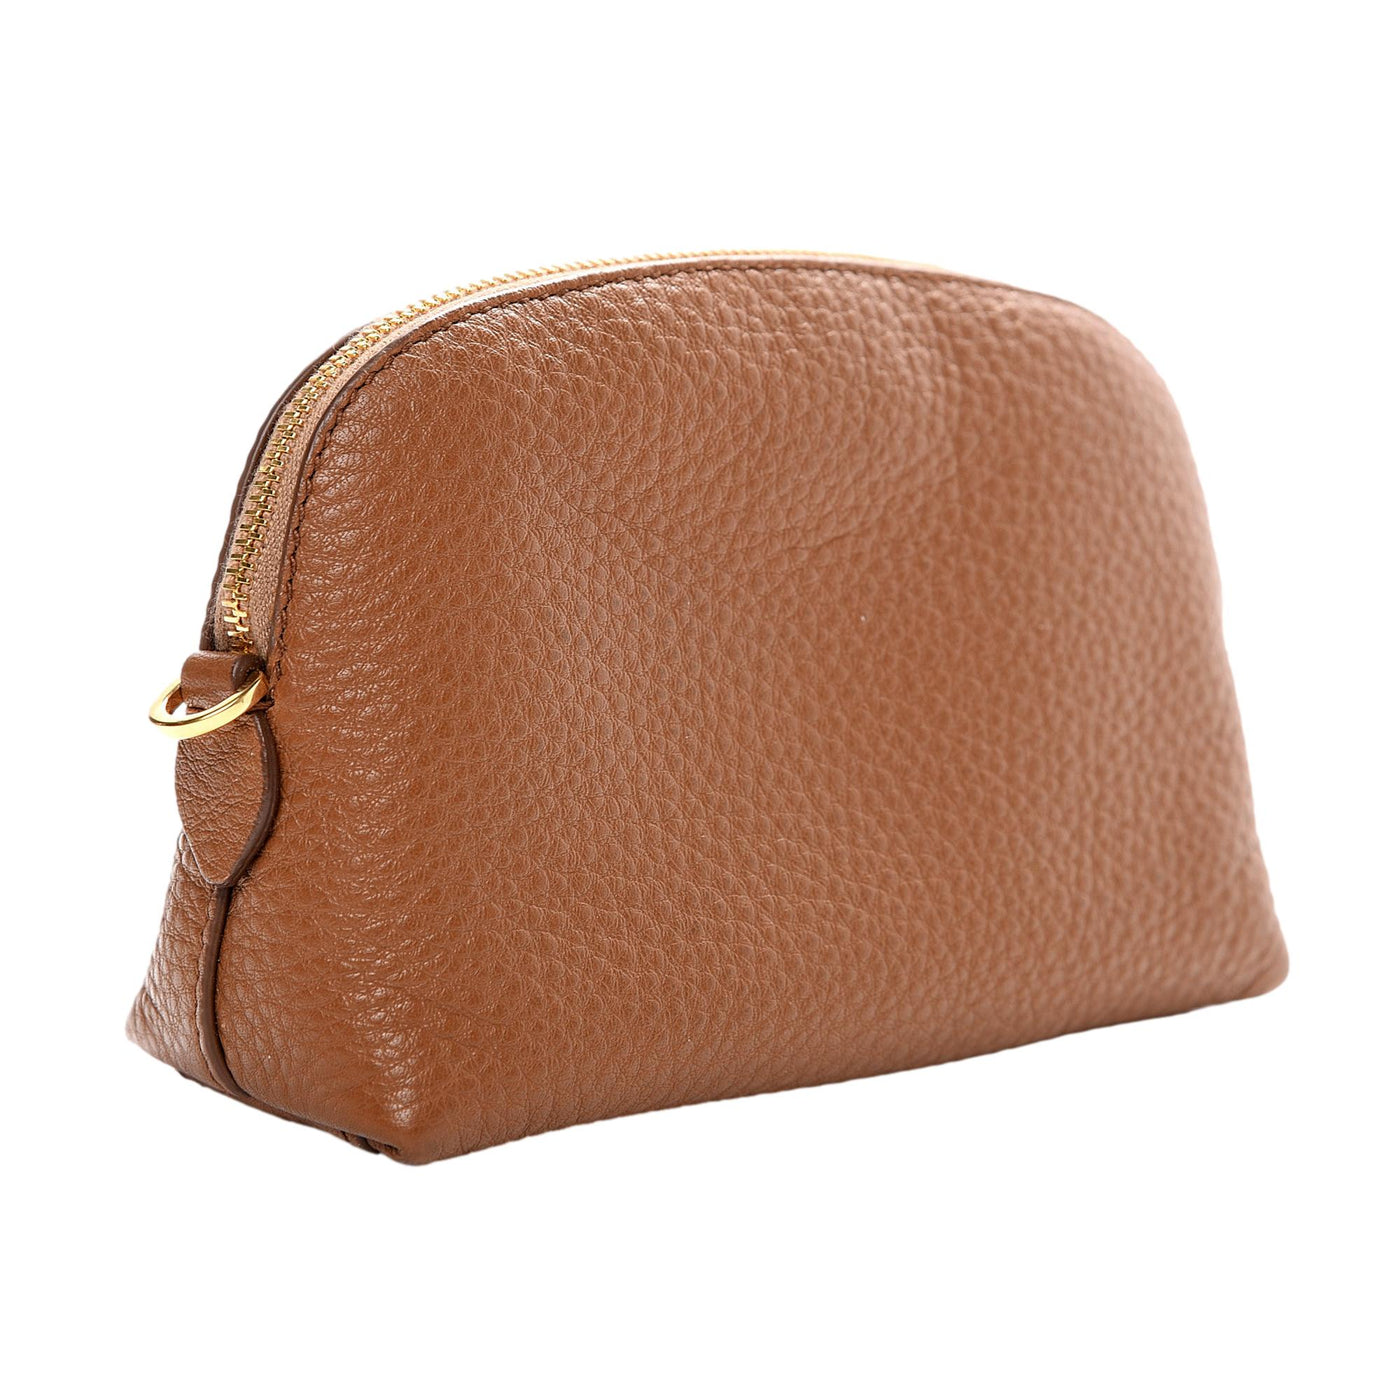 Prada Vitello Daino Cannella Brown Leather Small Cosmetic Case Clutch Bag - LUXURYMRKT